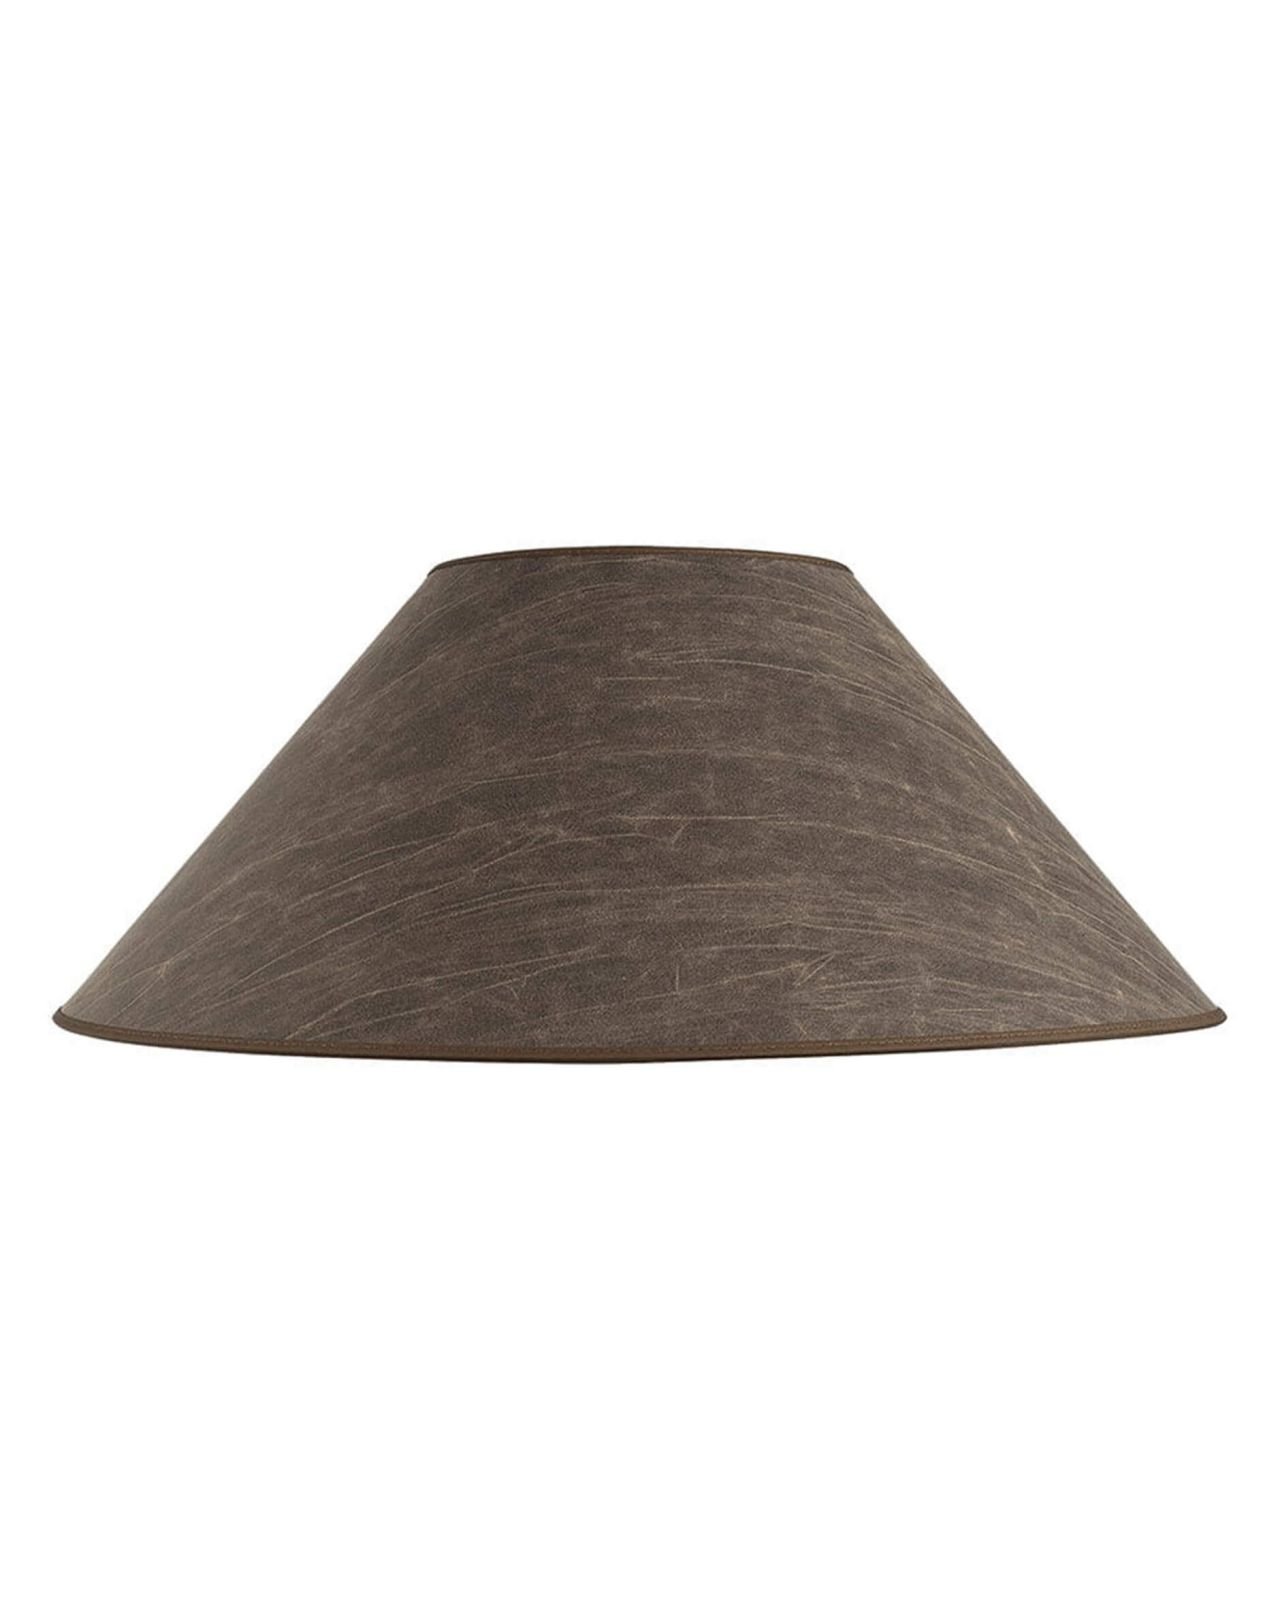 Non La Lamp Shade Leather Pale Brown